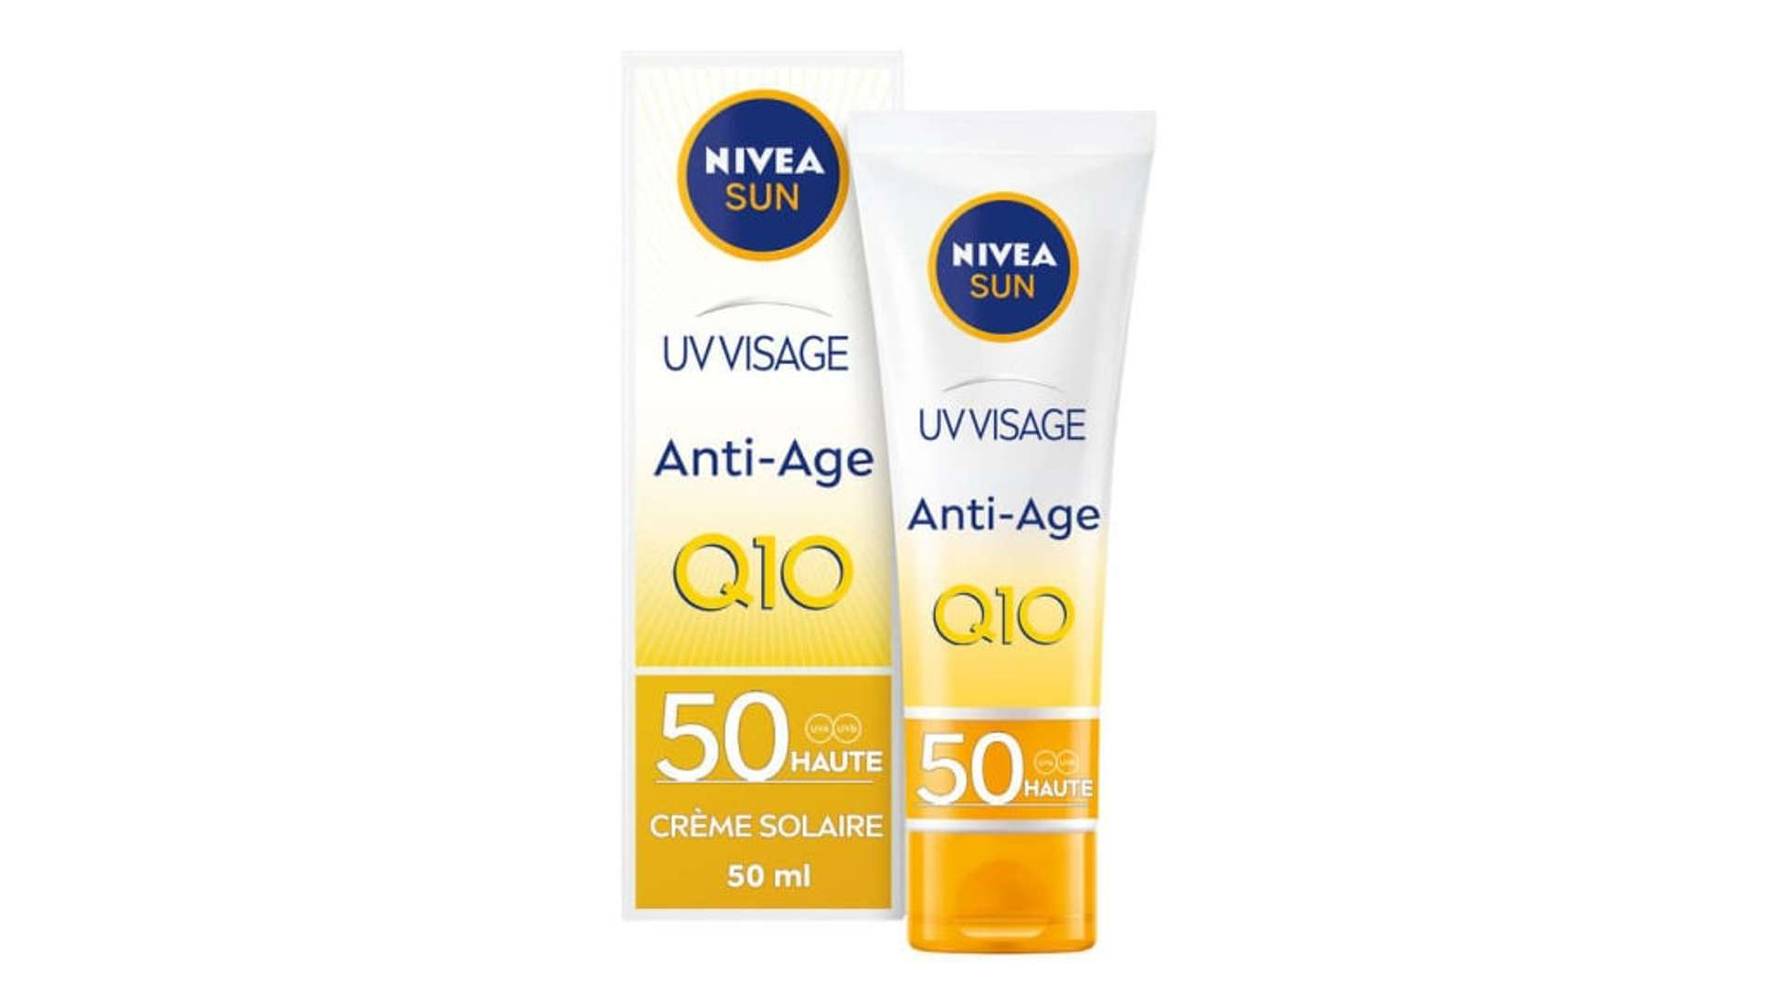 Nivea Sun - Crème solaire visage fps 50 anti-âge q10